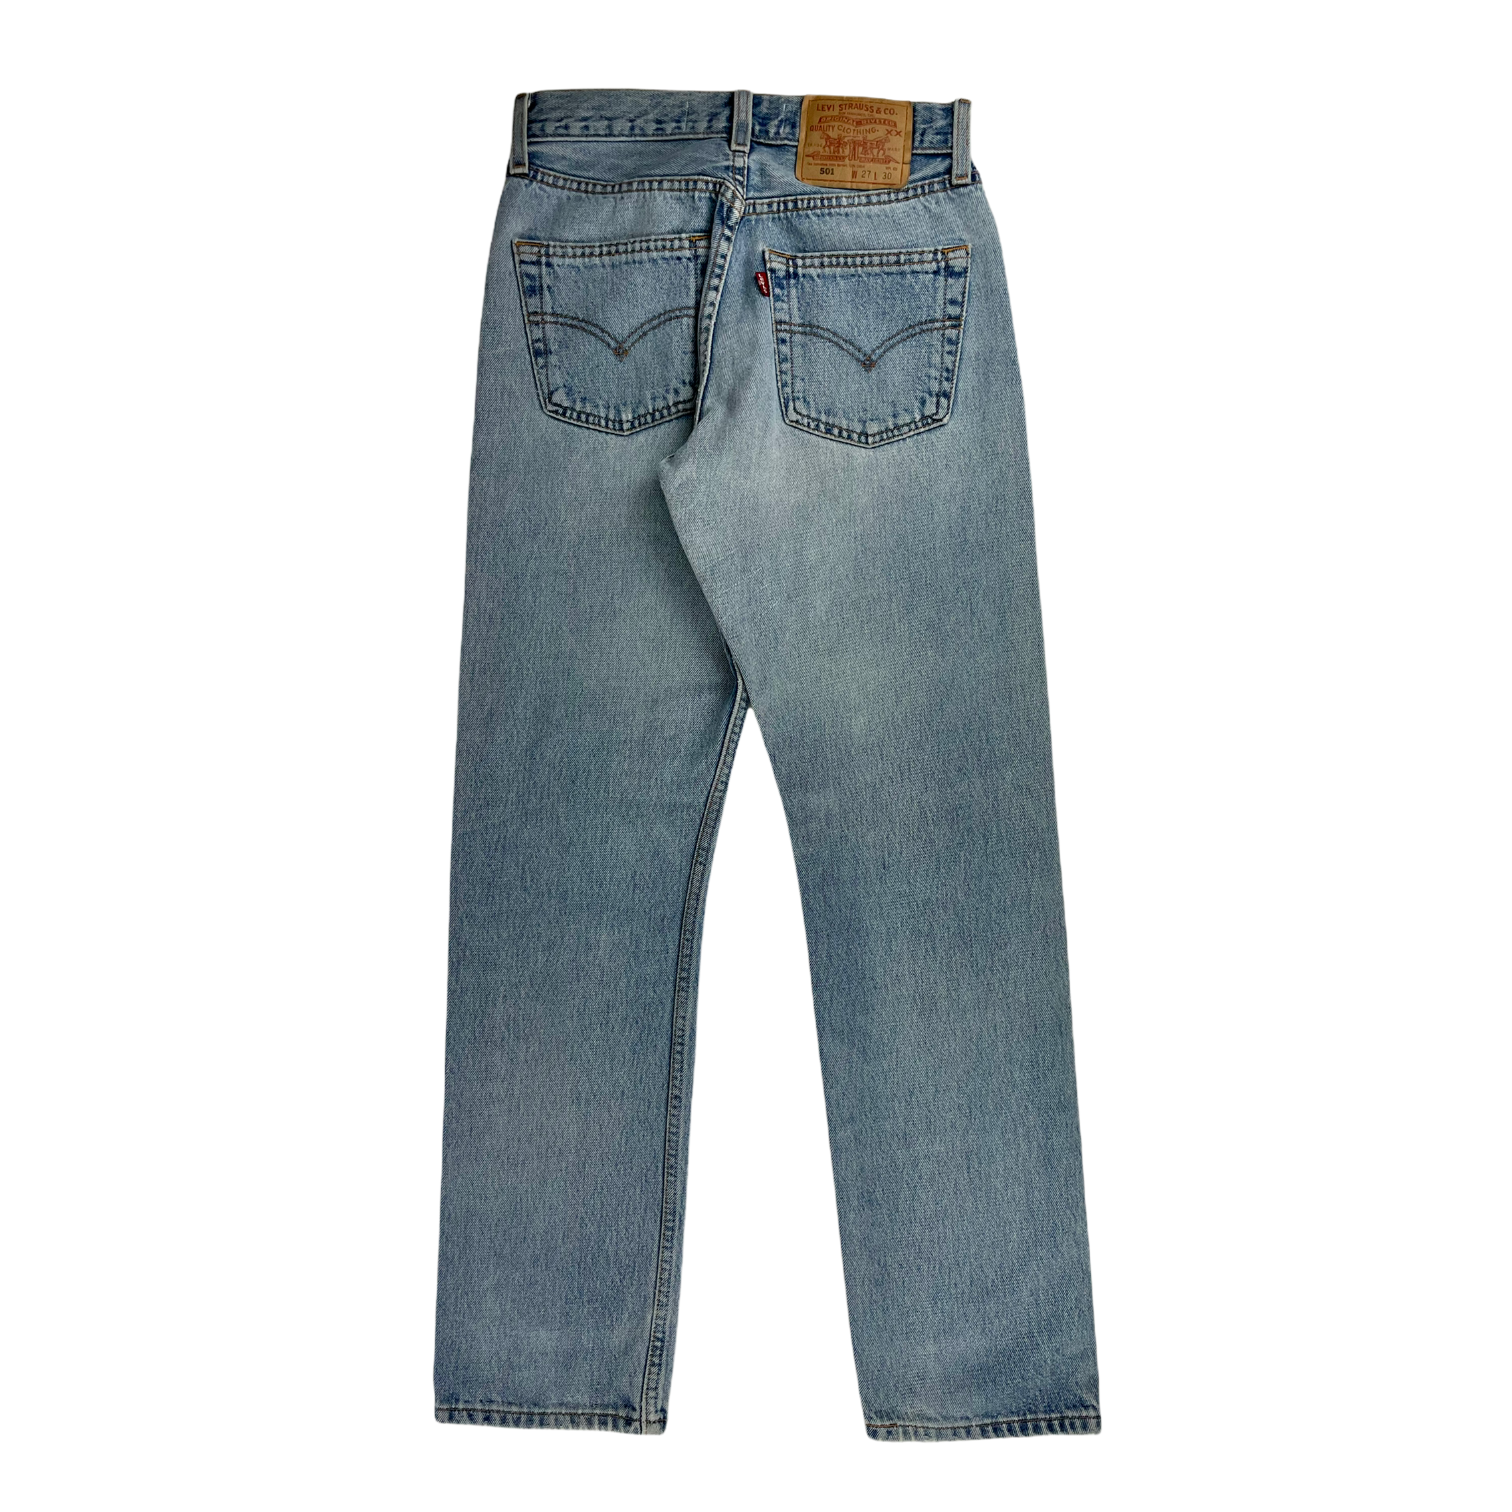 Vintage Levi's 90's 501 Jeans - Restorecph